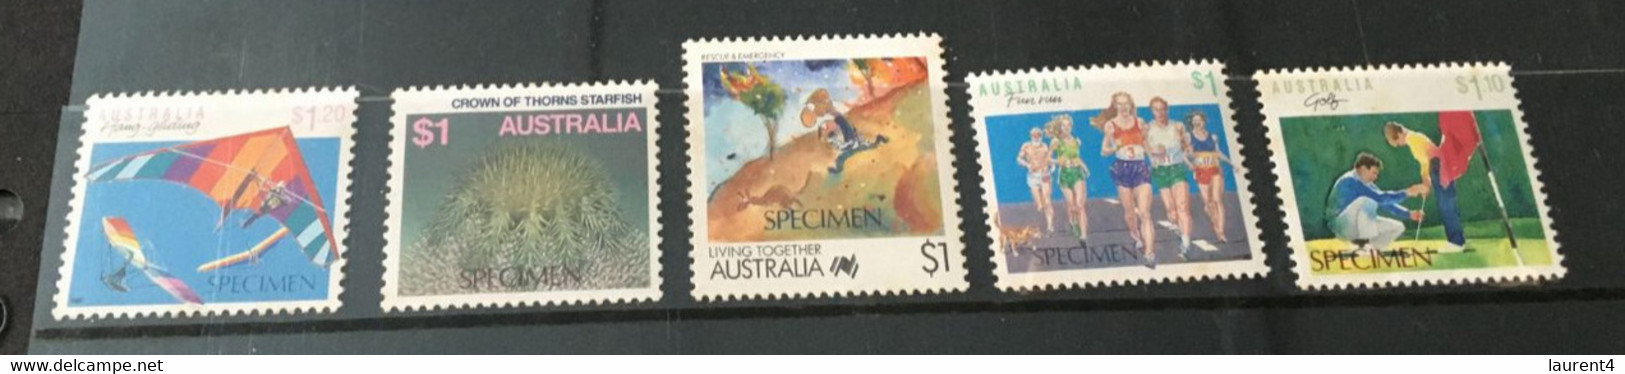 (Stamps 08-03-2021) Selection Of 5 Mint High Values Issues Of SPECIMEN Stamps From Australia - Variétés Et Curiosités